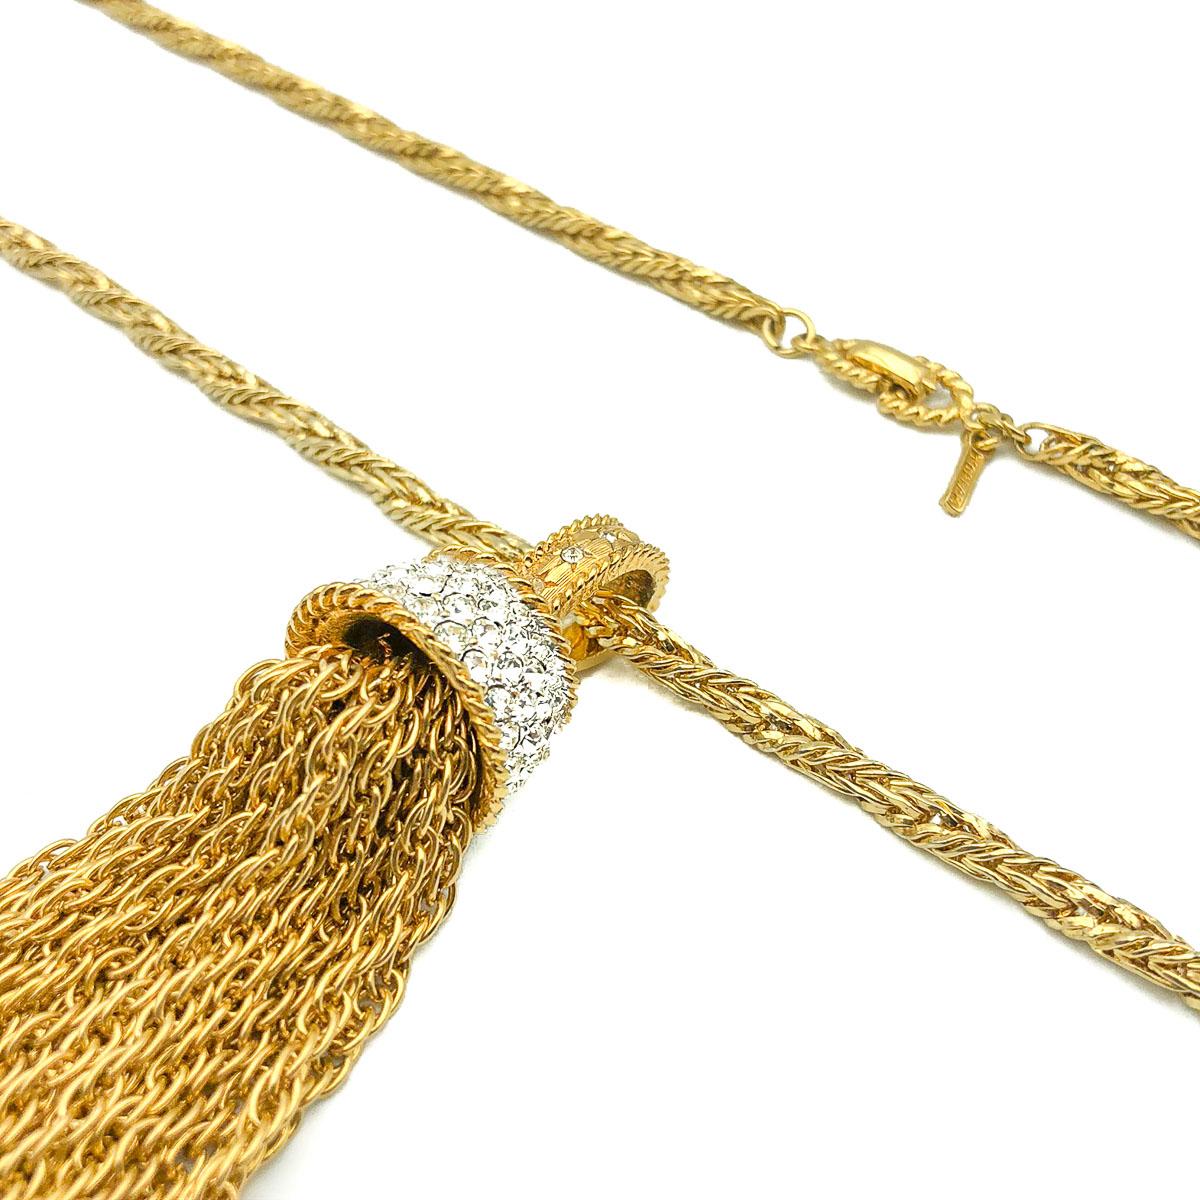 Un collier à glands Vintage D'Orlan superbement glamour. Ce collier est composé d'une adorable chaîne longue et épaisse de style corde qui se termine par un impressionnant pendentif en forme de pompon orné de strass qui attire l'attention par son